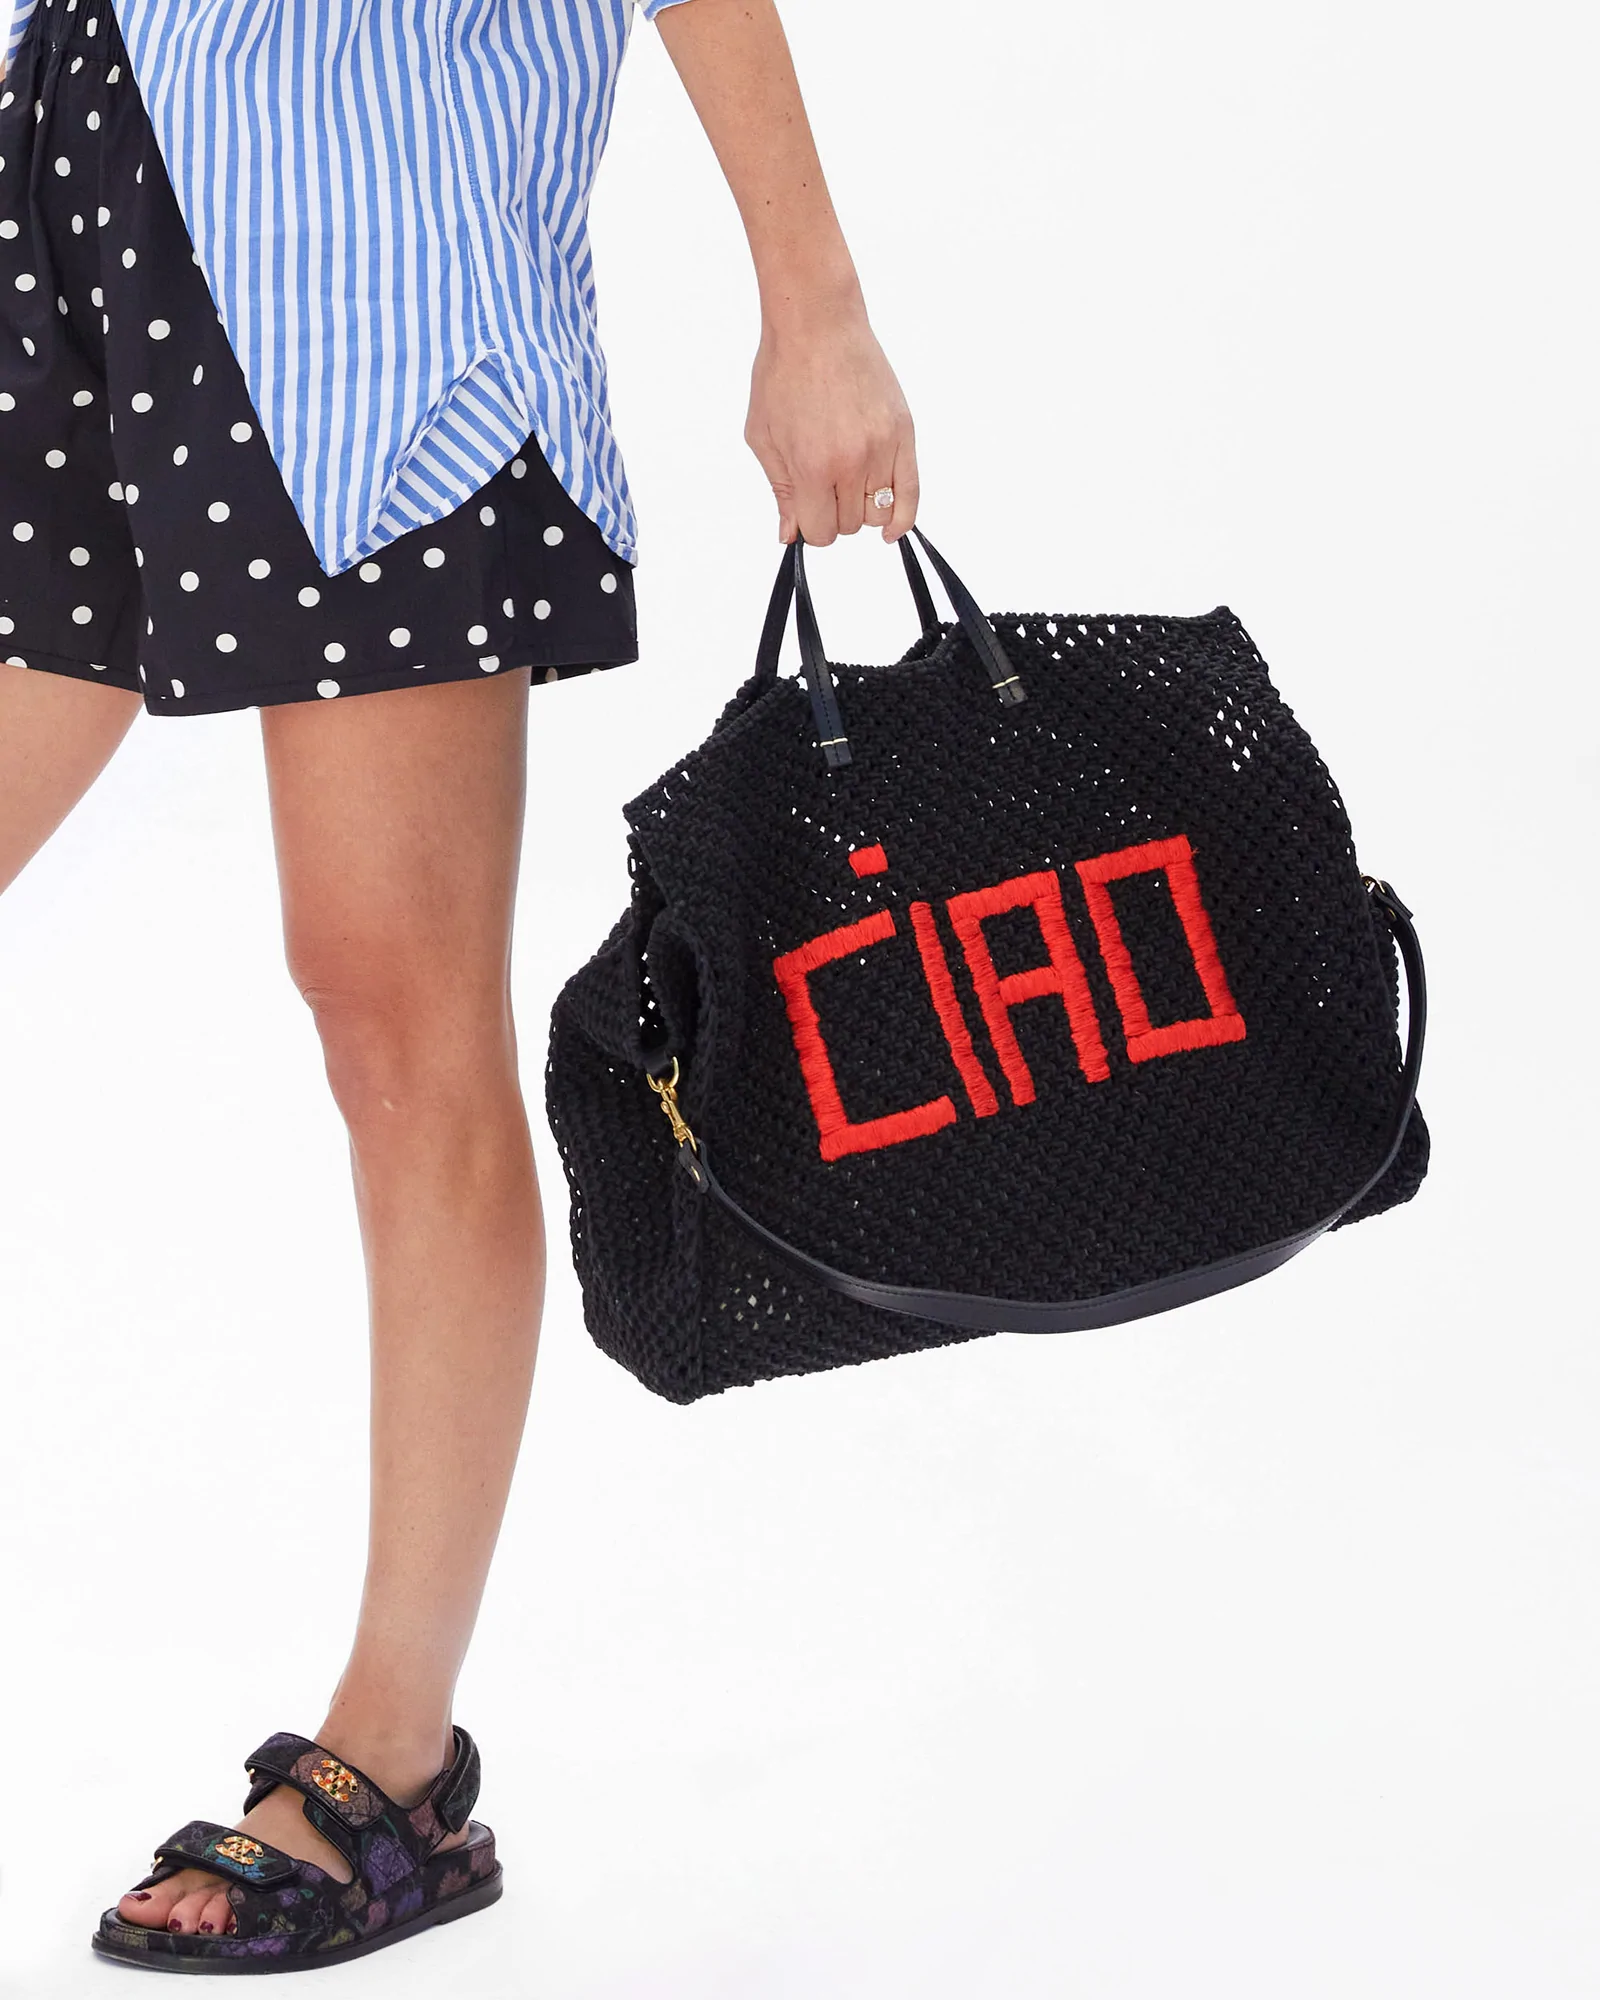 Clare V. Ciao Tote Bag